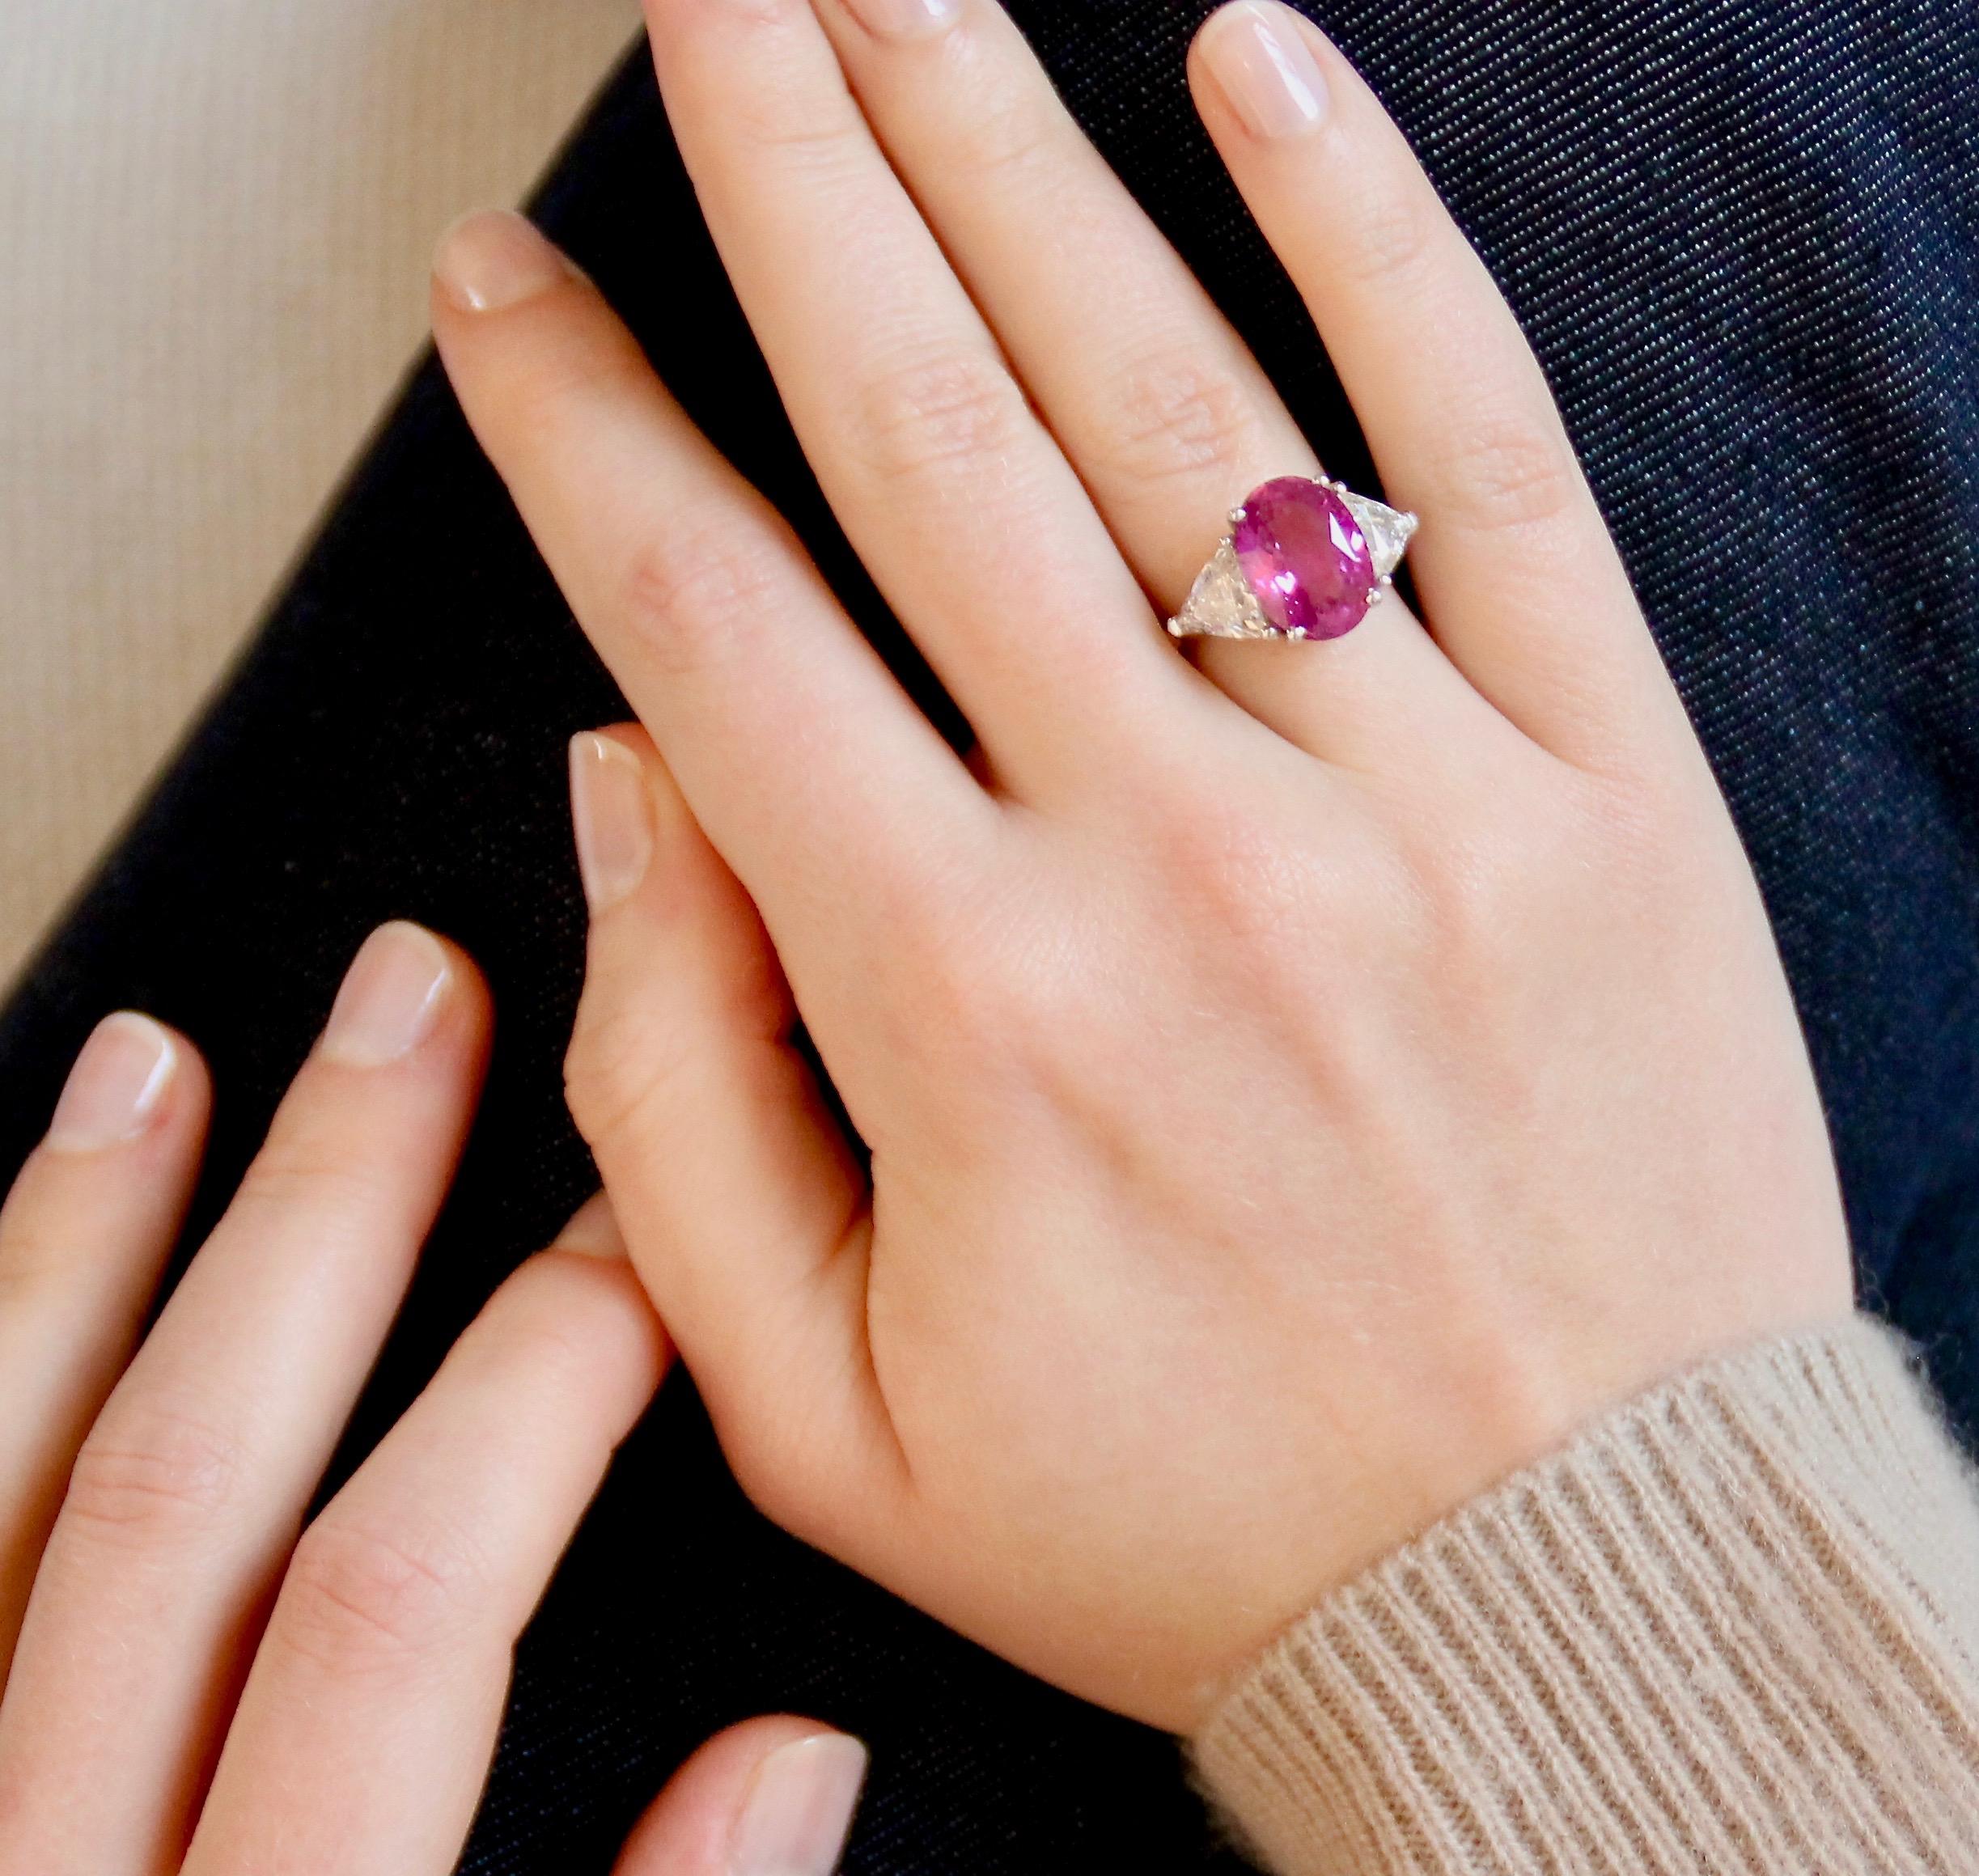 Ring aus 18k Gold. 

Ring besetzt mit einem ovalen Ceylon-Saphir von 6,57 Karat und zwei dreieckigen Diamanten von insgesamt 2,05 Karat (Farbe G - Klarheit Vs). Sehr schöner intensiver rosa Saphir (natürlich erhitzt). Den Saphir haben wir aus Sri